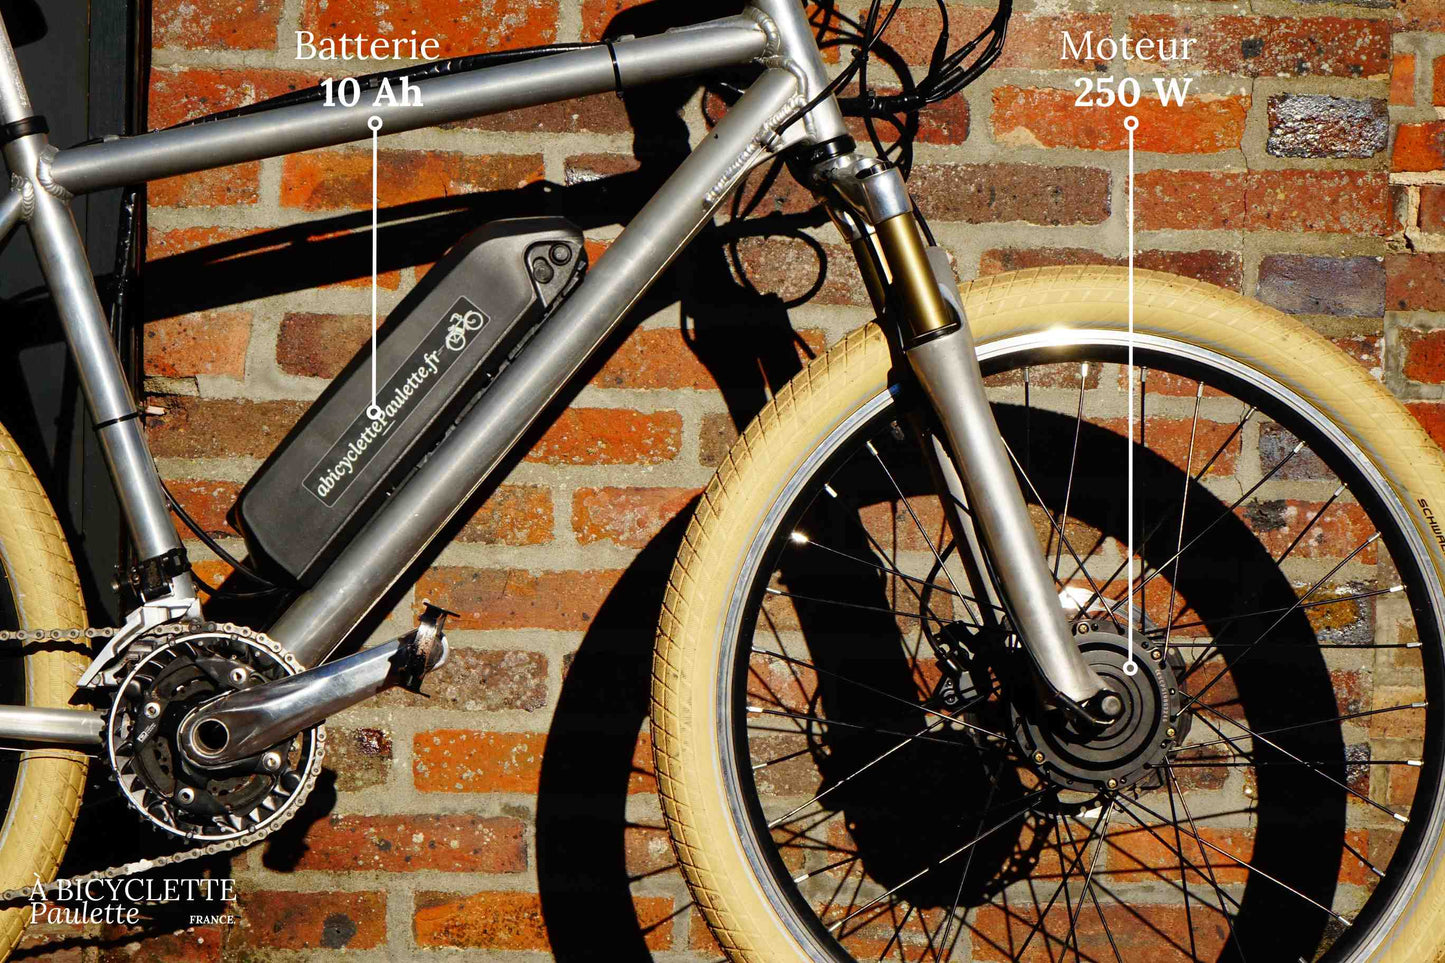  vélo électrique 250 W batterie roue avant - à bicyclette Paulette